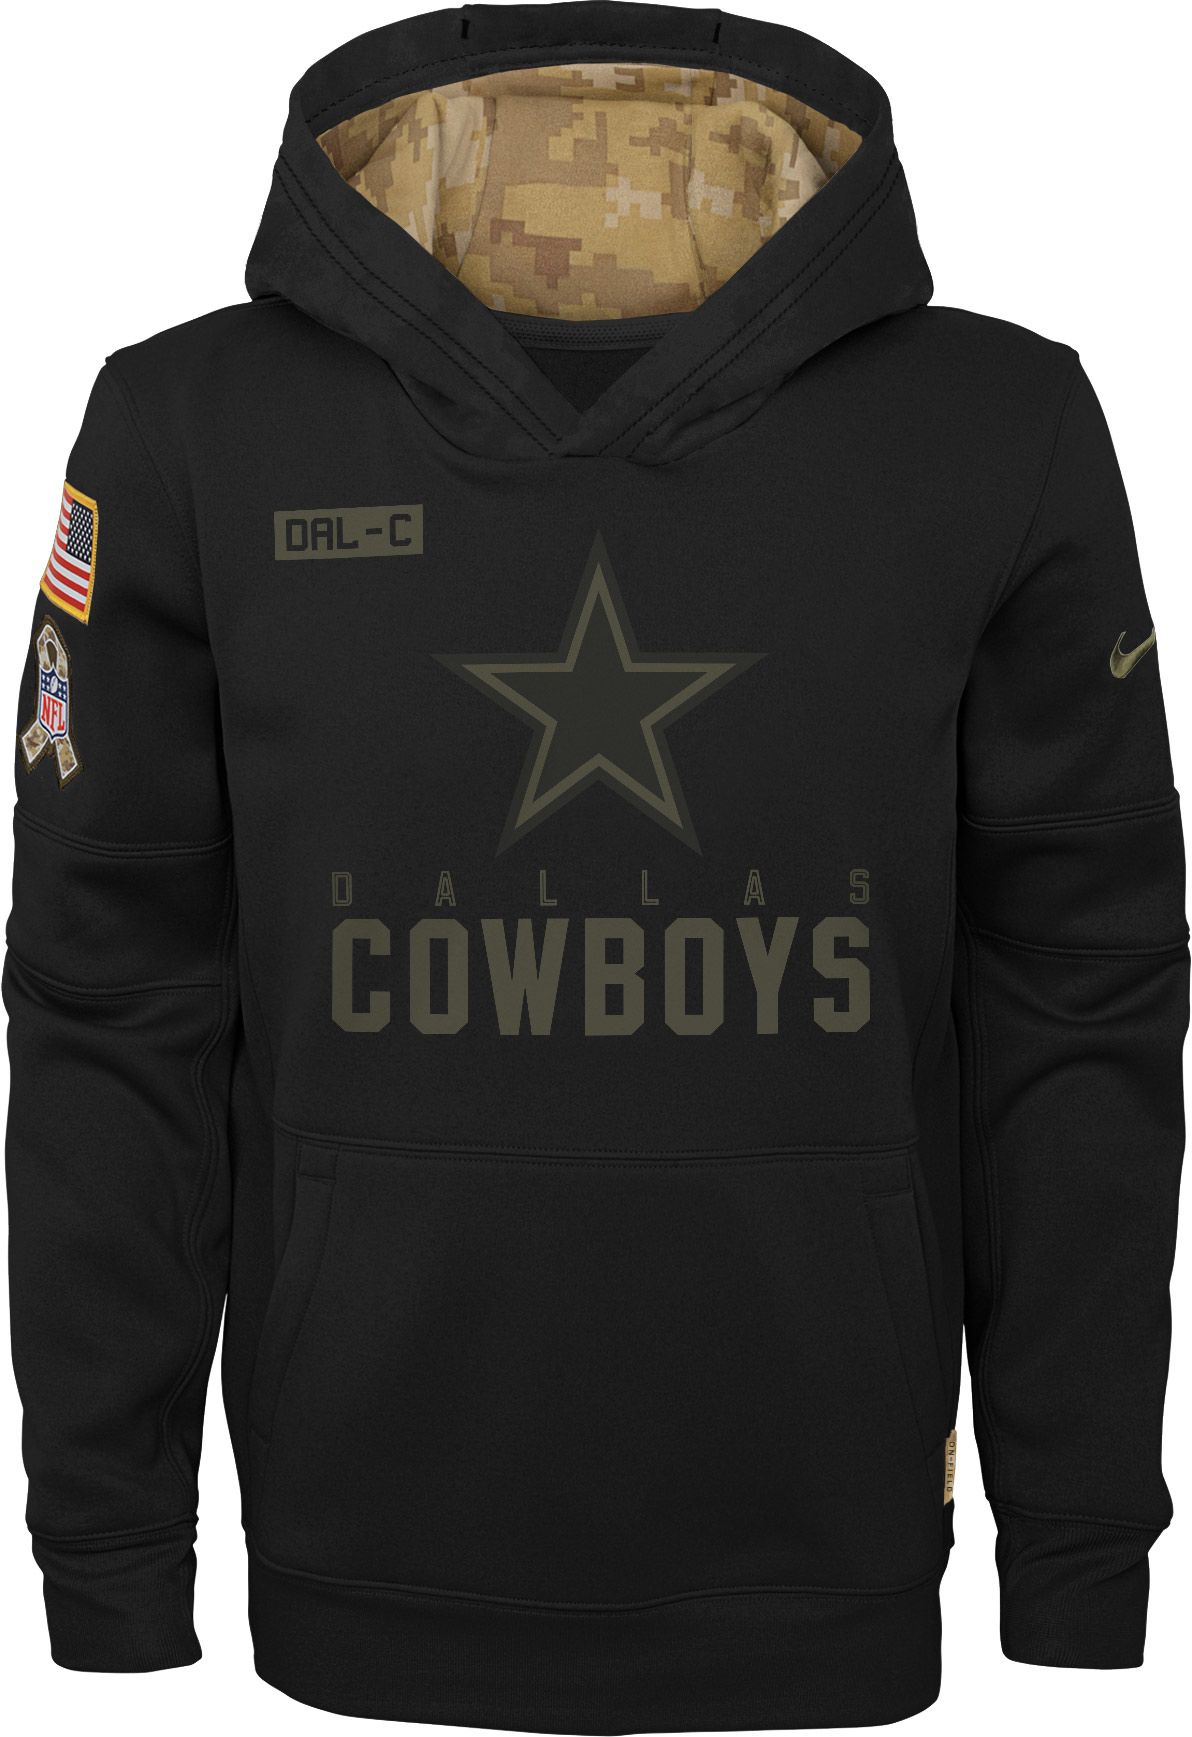 cowboys veteran hoodie